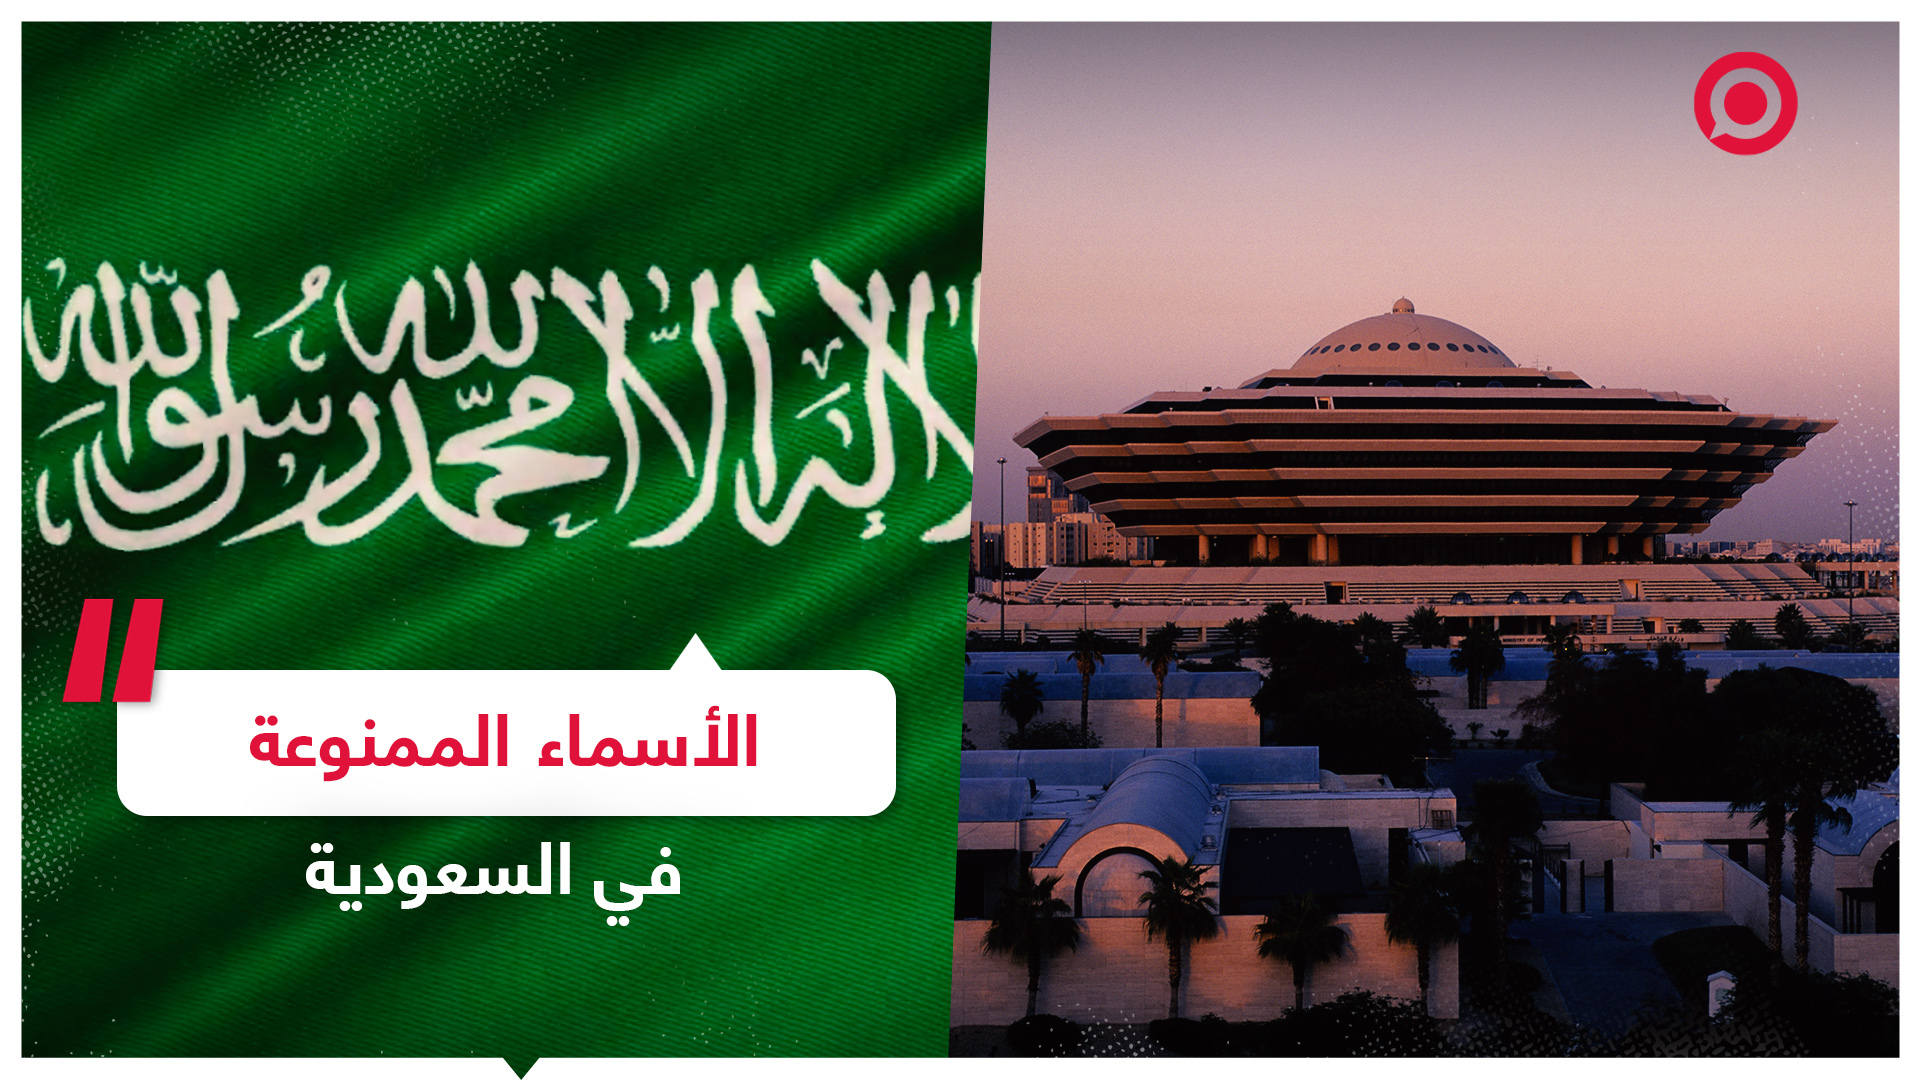 السعودية تحدد الضوابط المتبعة عند تسجيل الأسماء